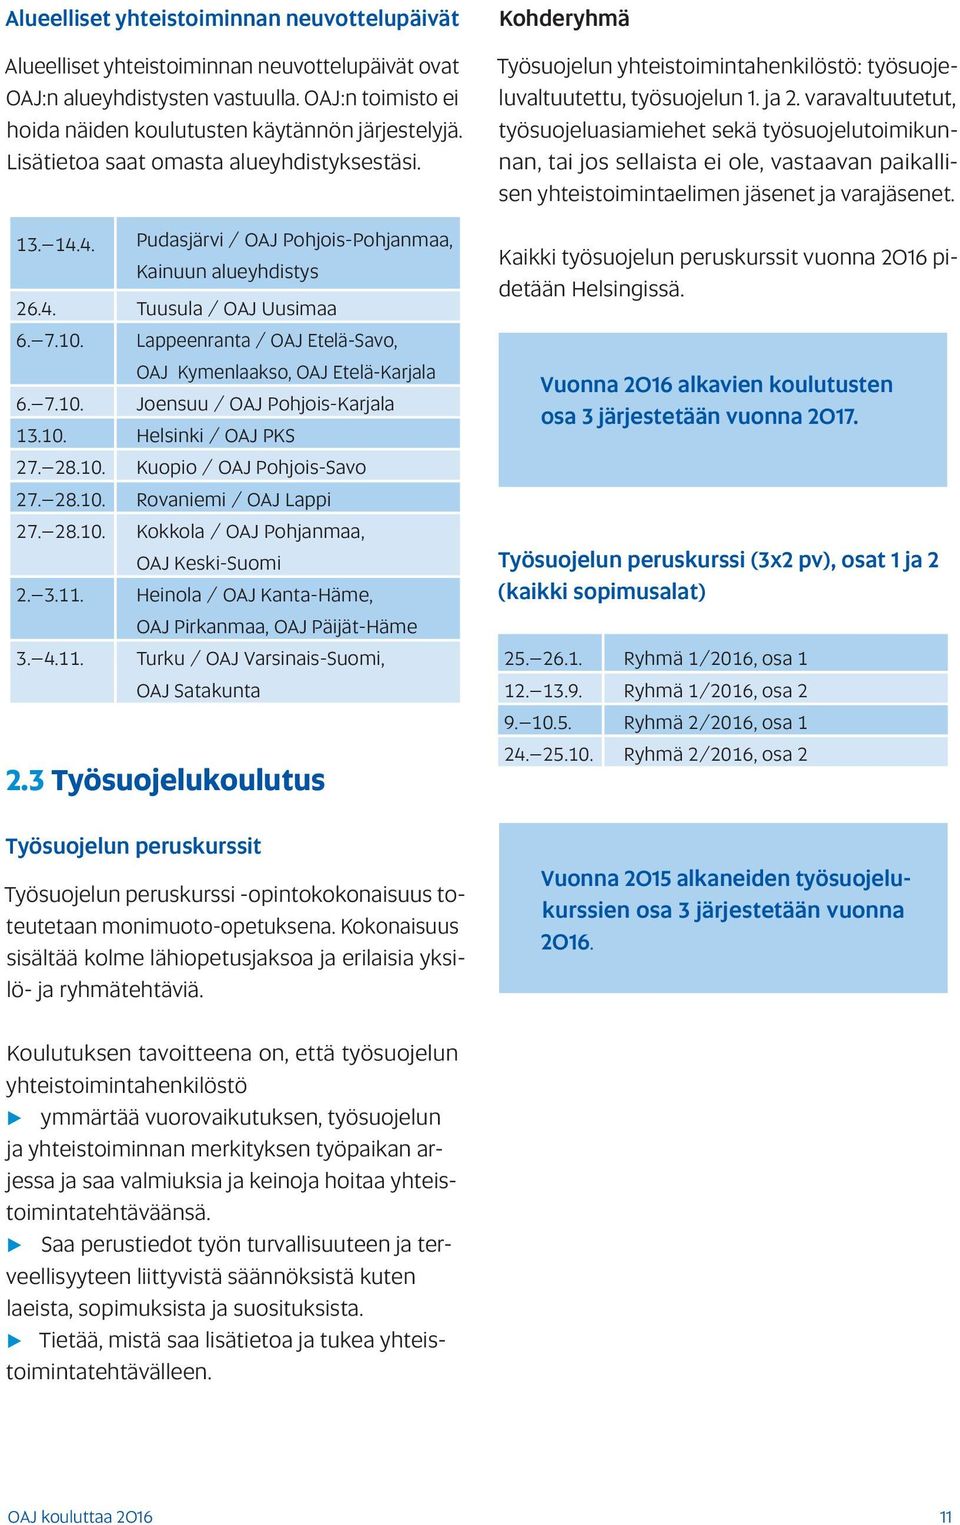 Lappeenranta / OAJ Etelä-Savo, OAJ Kymenlaakso, OAJ Etelä-Karjala 6. 7.10. Joensuu / OAJ Pohjois-Karjala 13.10. Helsinki / OAJ PKS 27. 28.10. Kuopio / OAJ Pohjois-Savo 27. 28.10. Rovaniemi / OAJ Lappi 27.